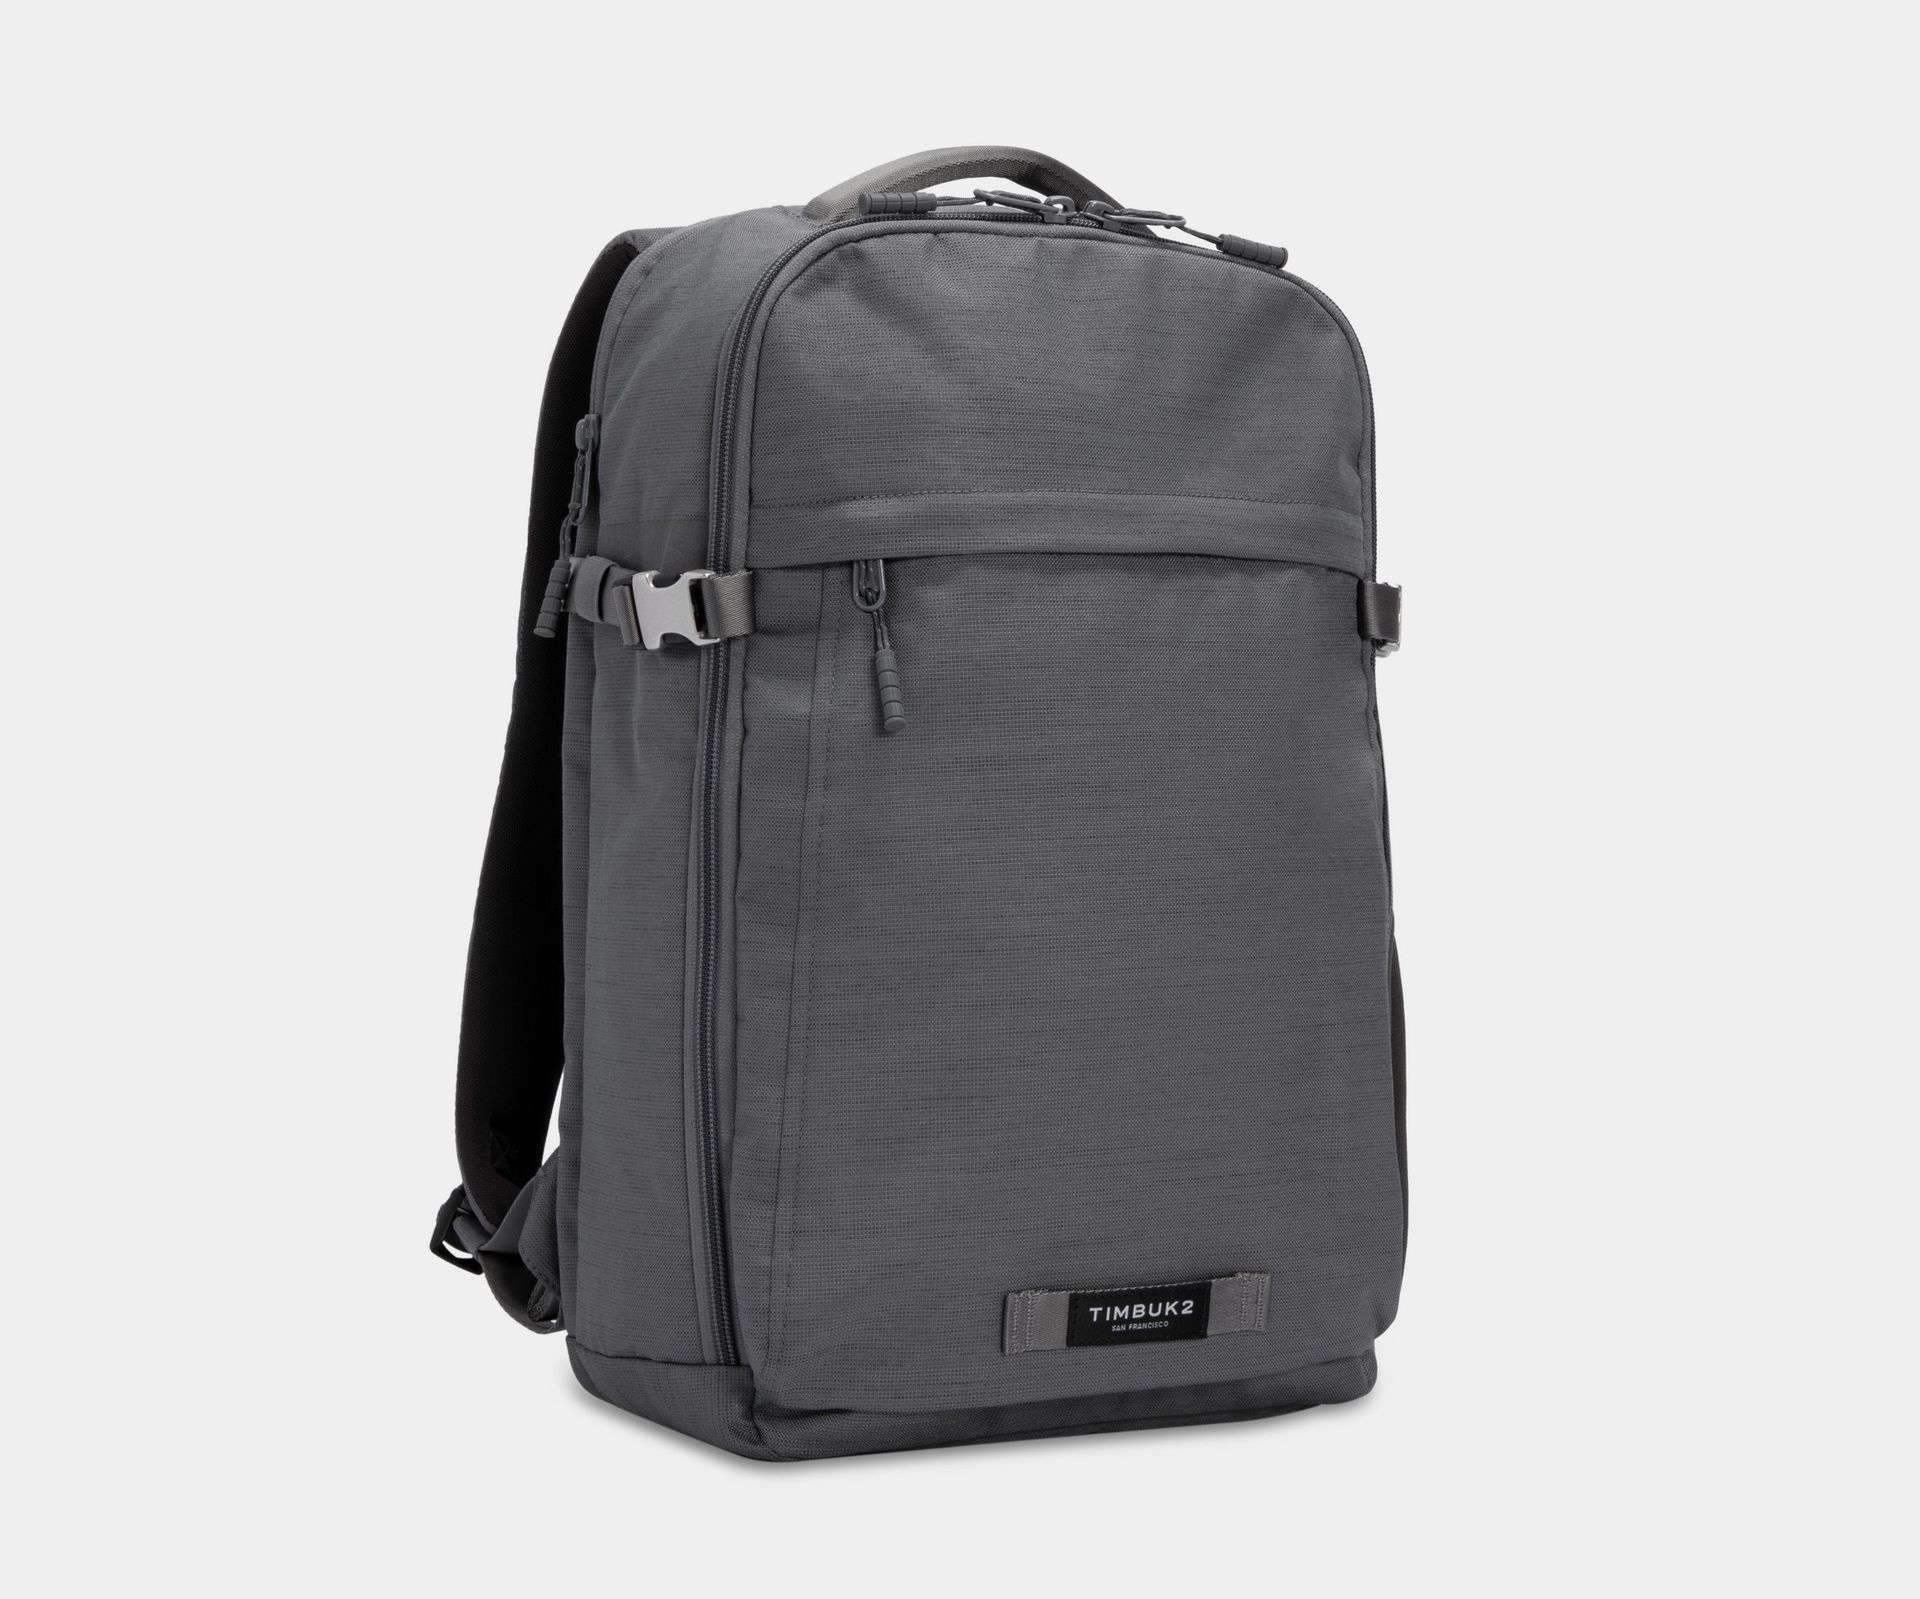 Custom Branded Timbuk2 Bags - Typeset